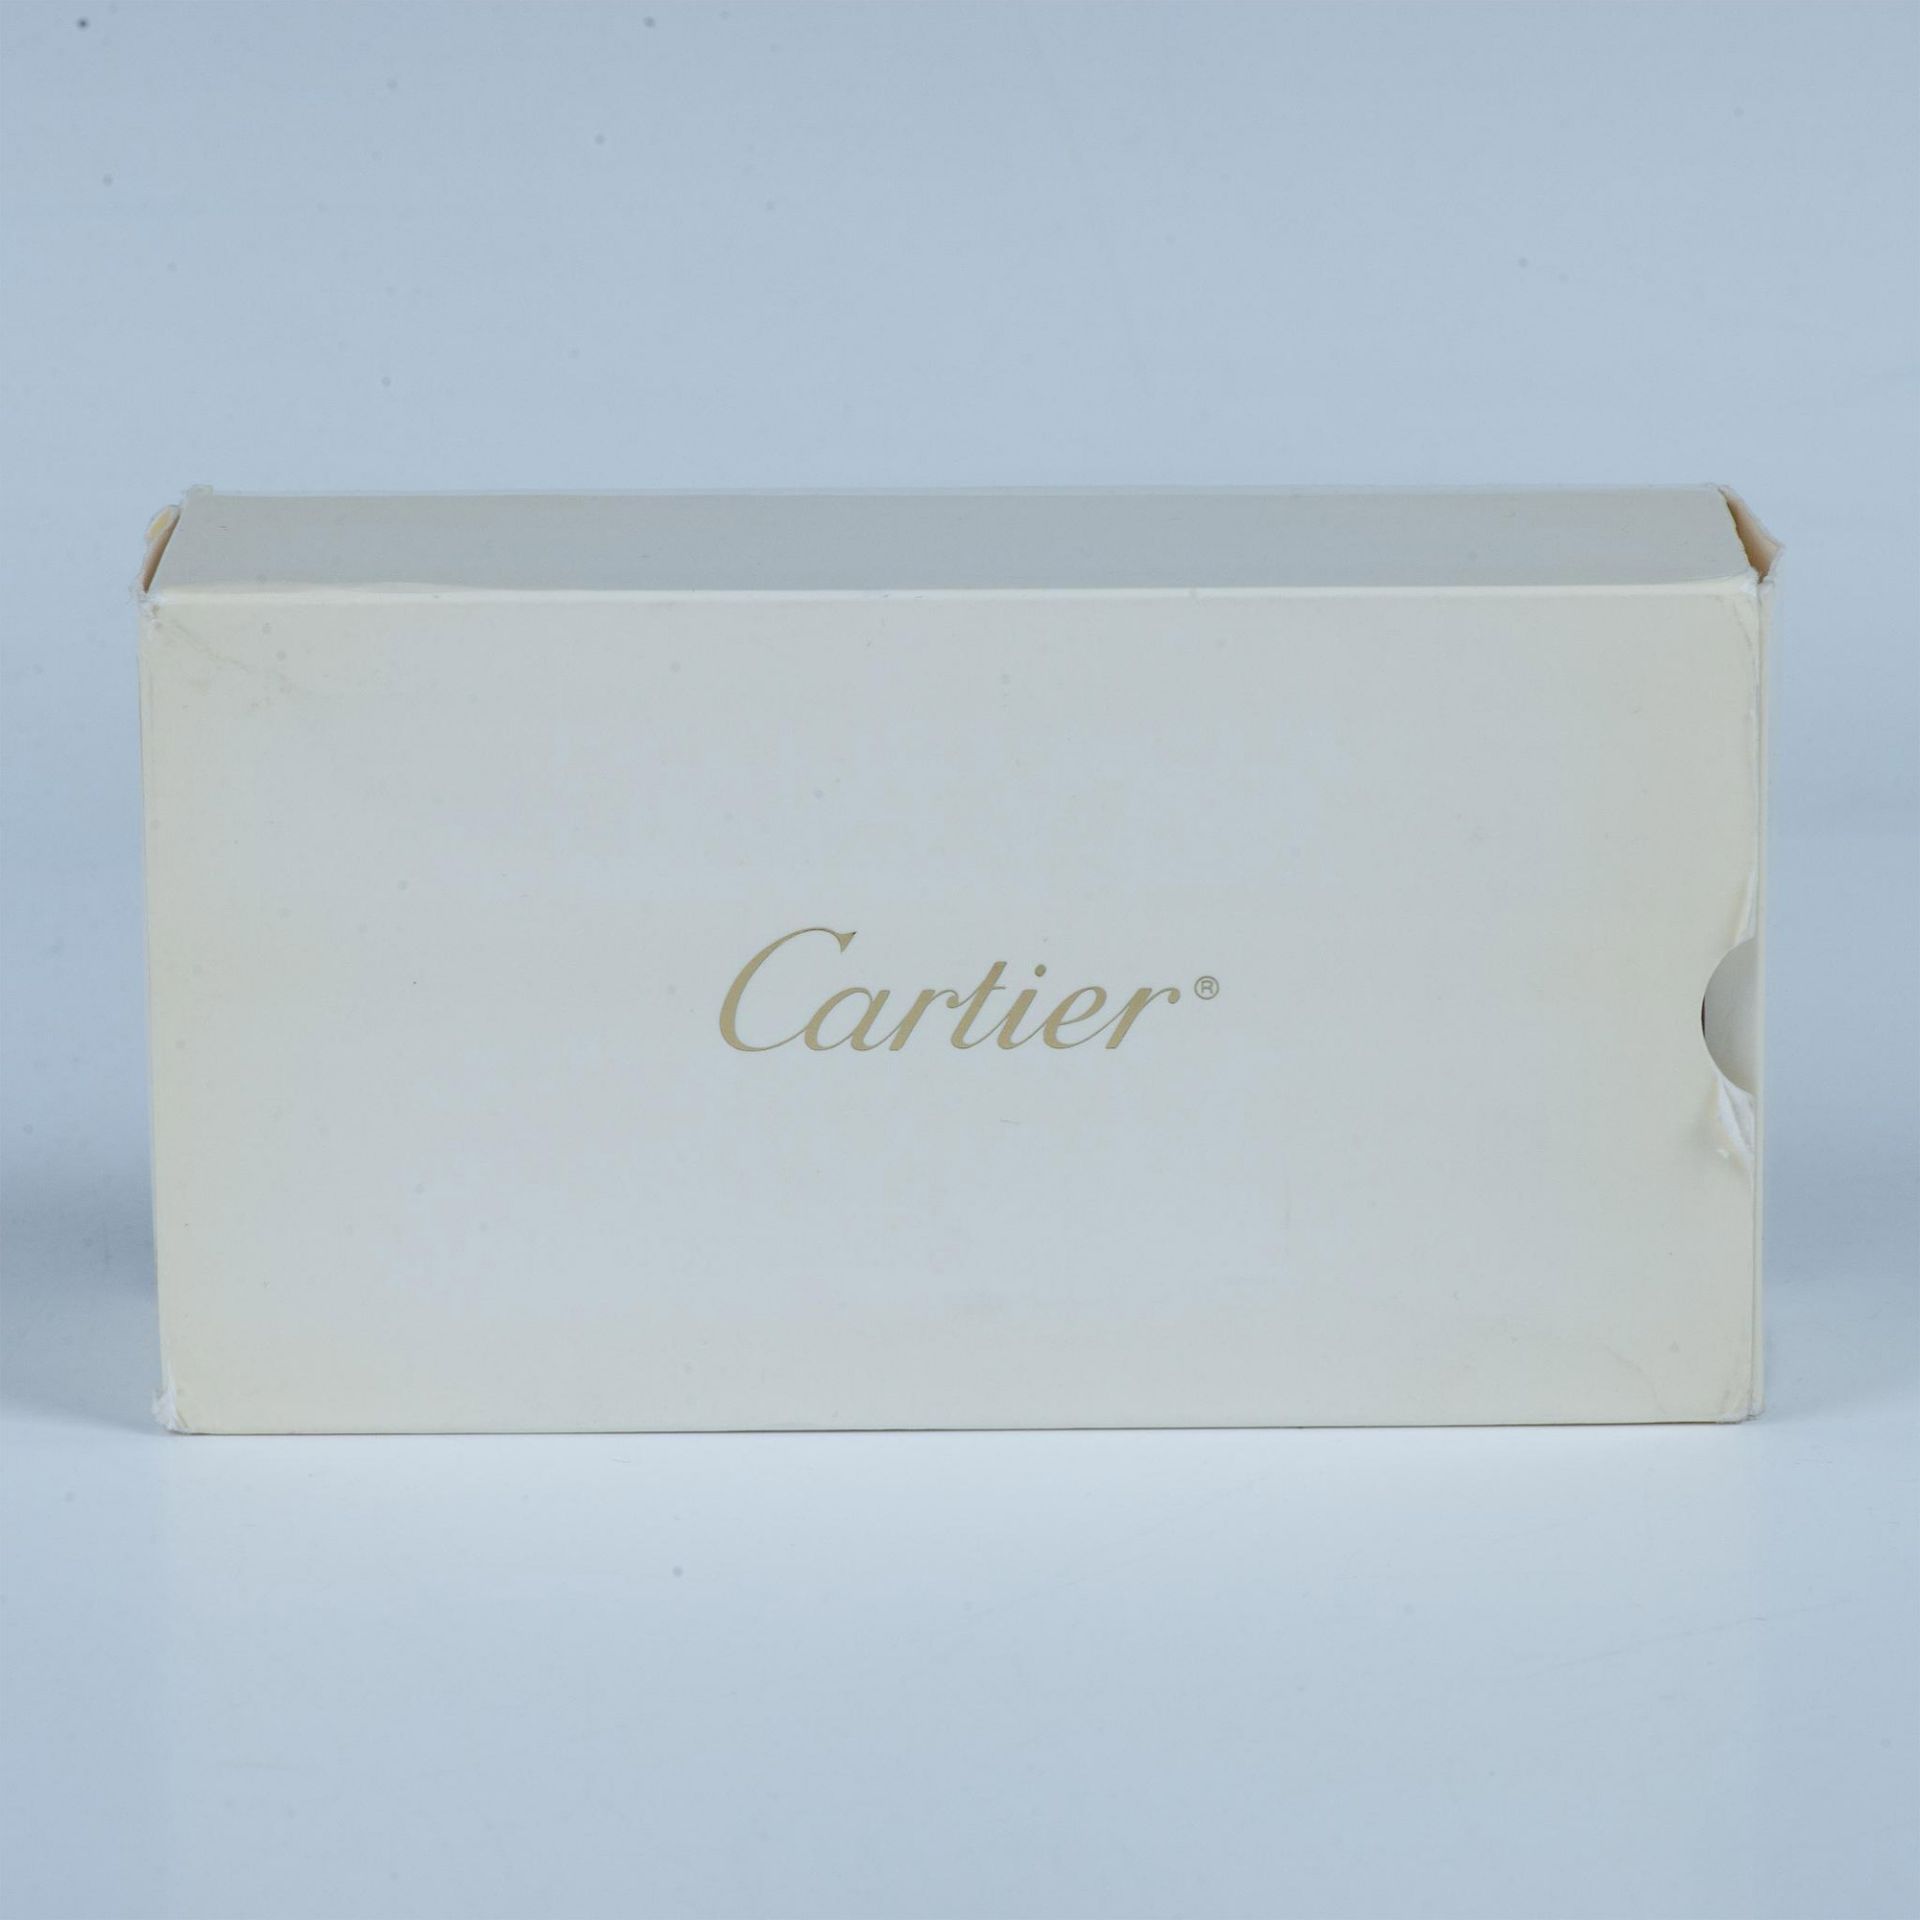 Cartier Eyeglass Frame - Image 3 of 11